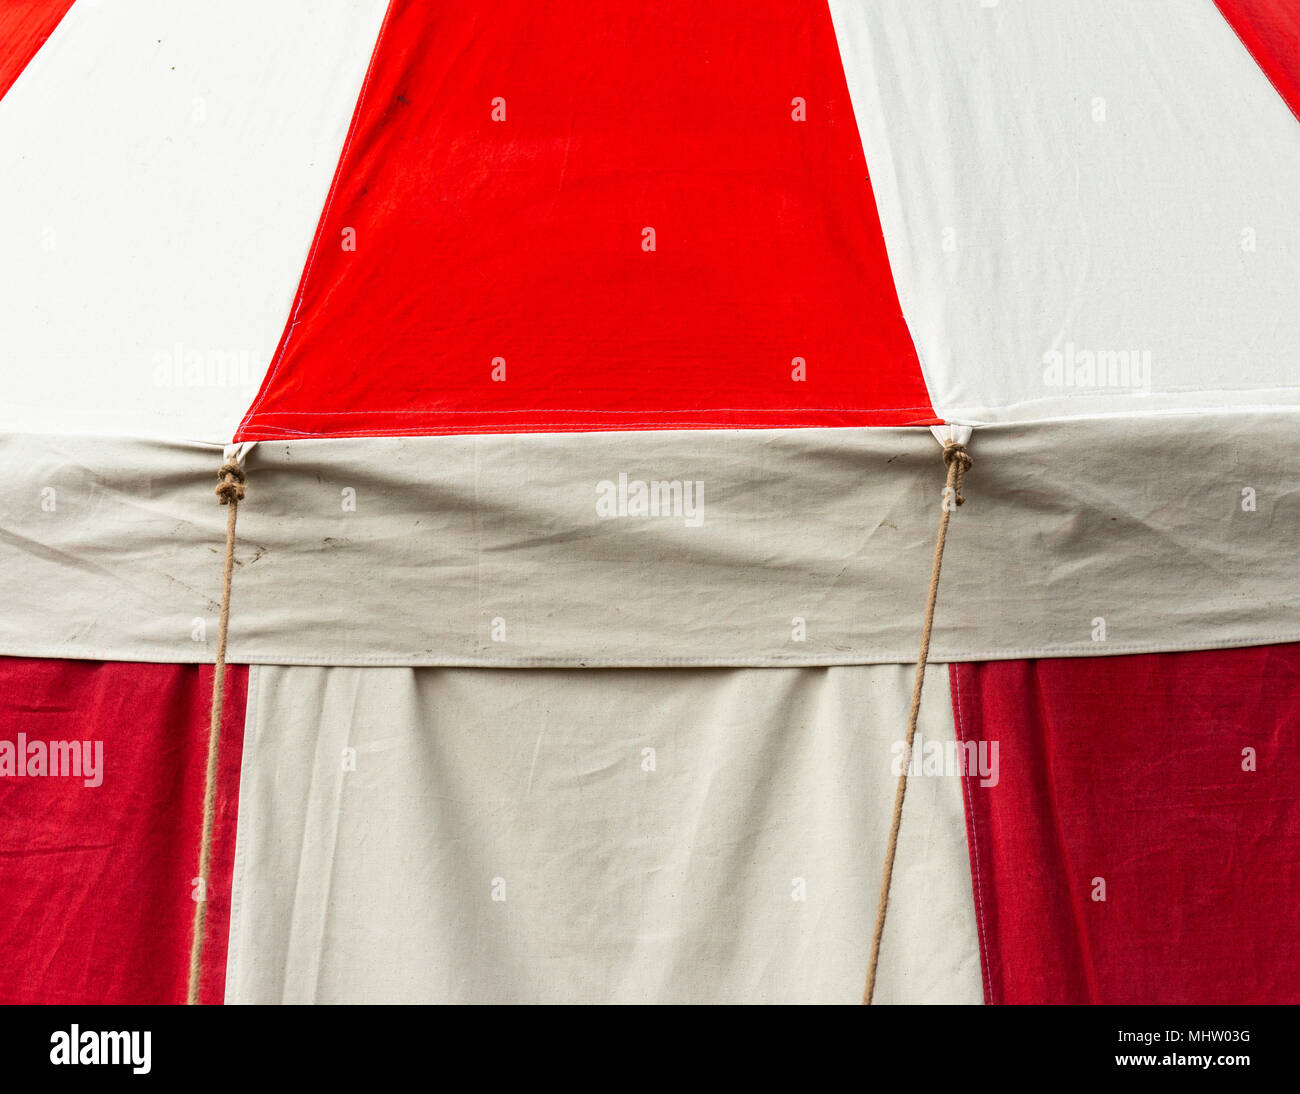 Détail d'une tente médiévale faite de toile et décoré avec des plaques rouges Banque D'Images